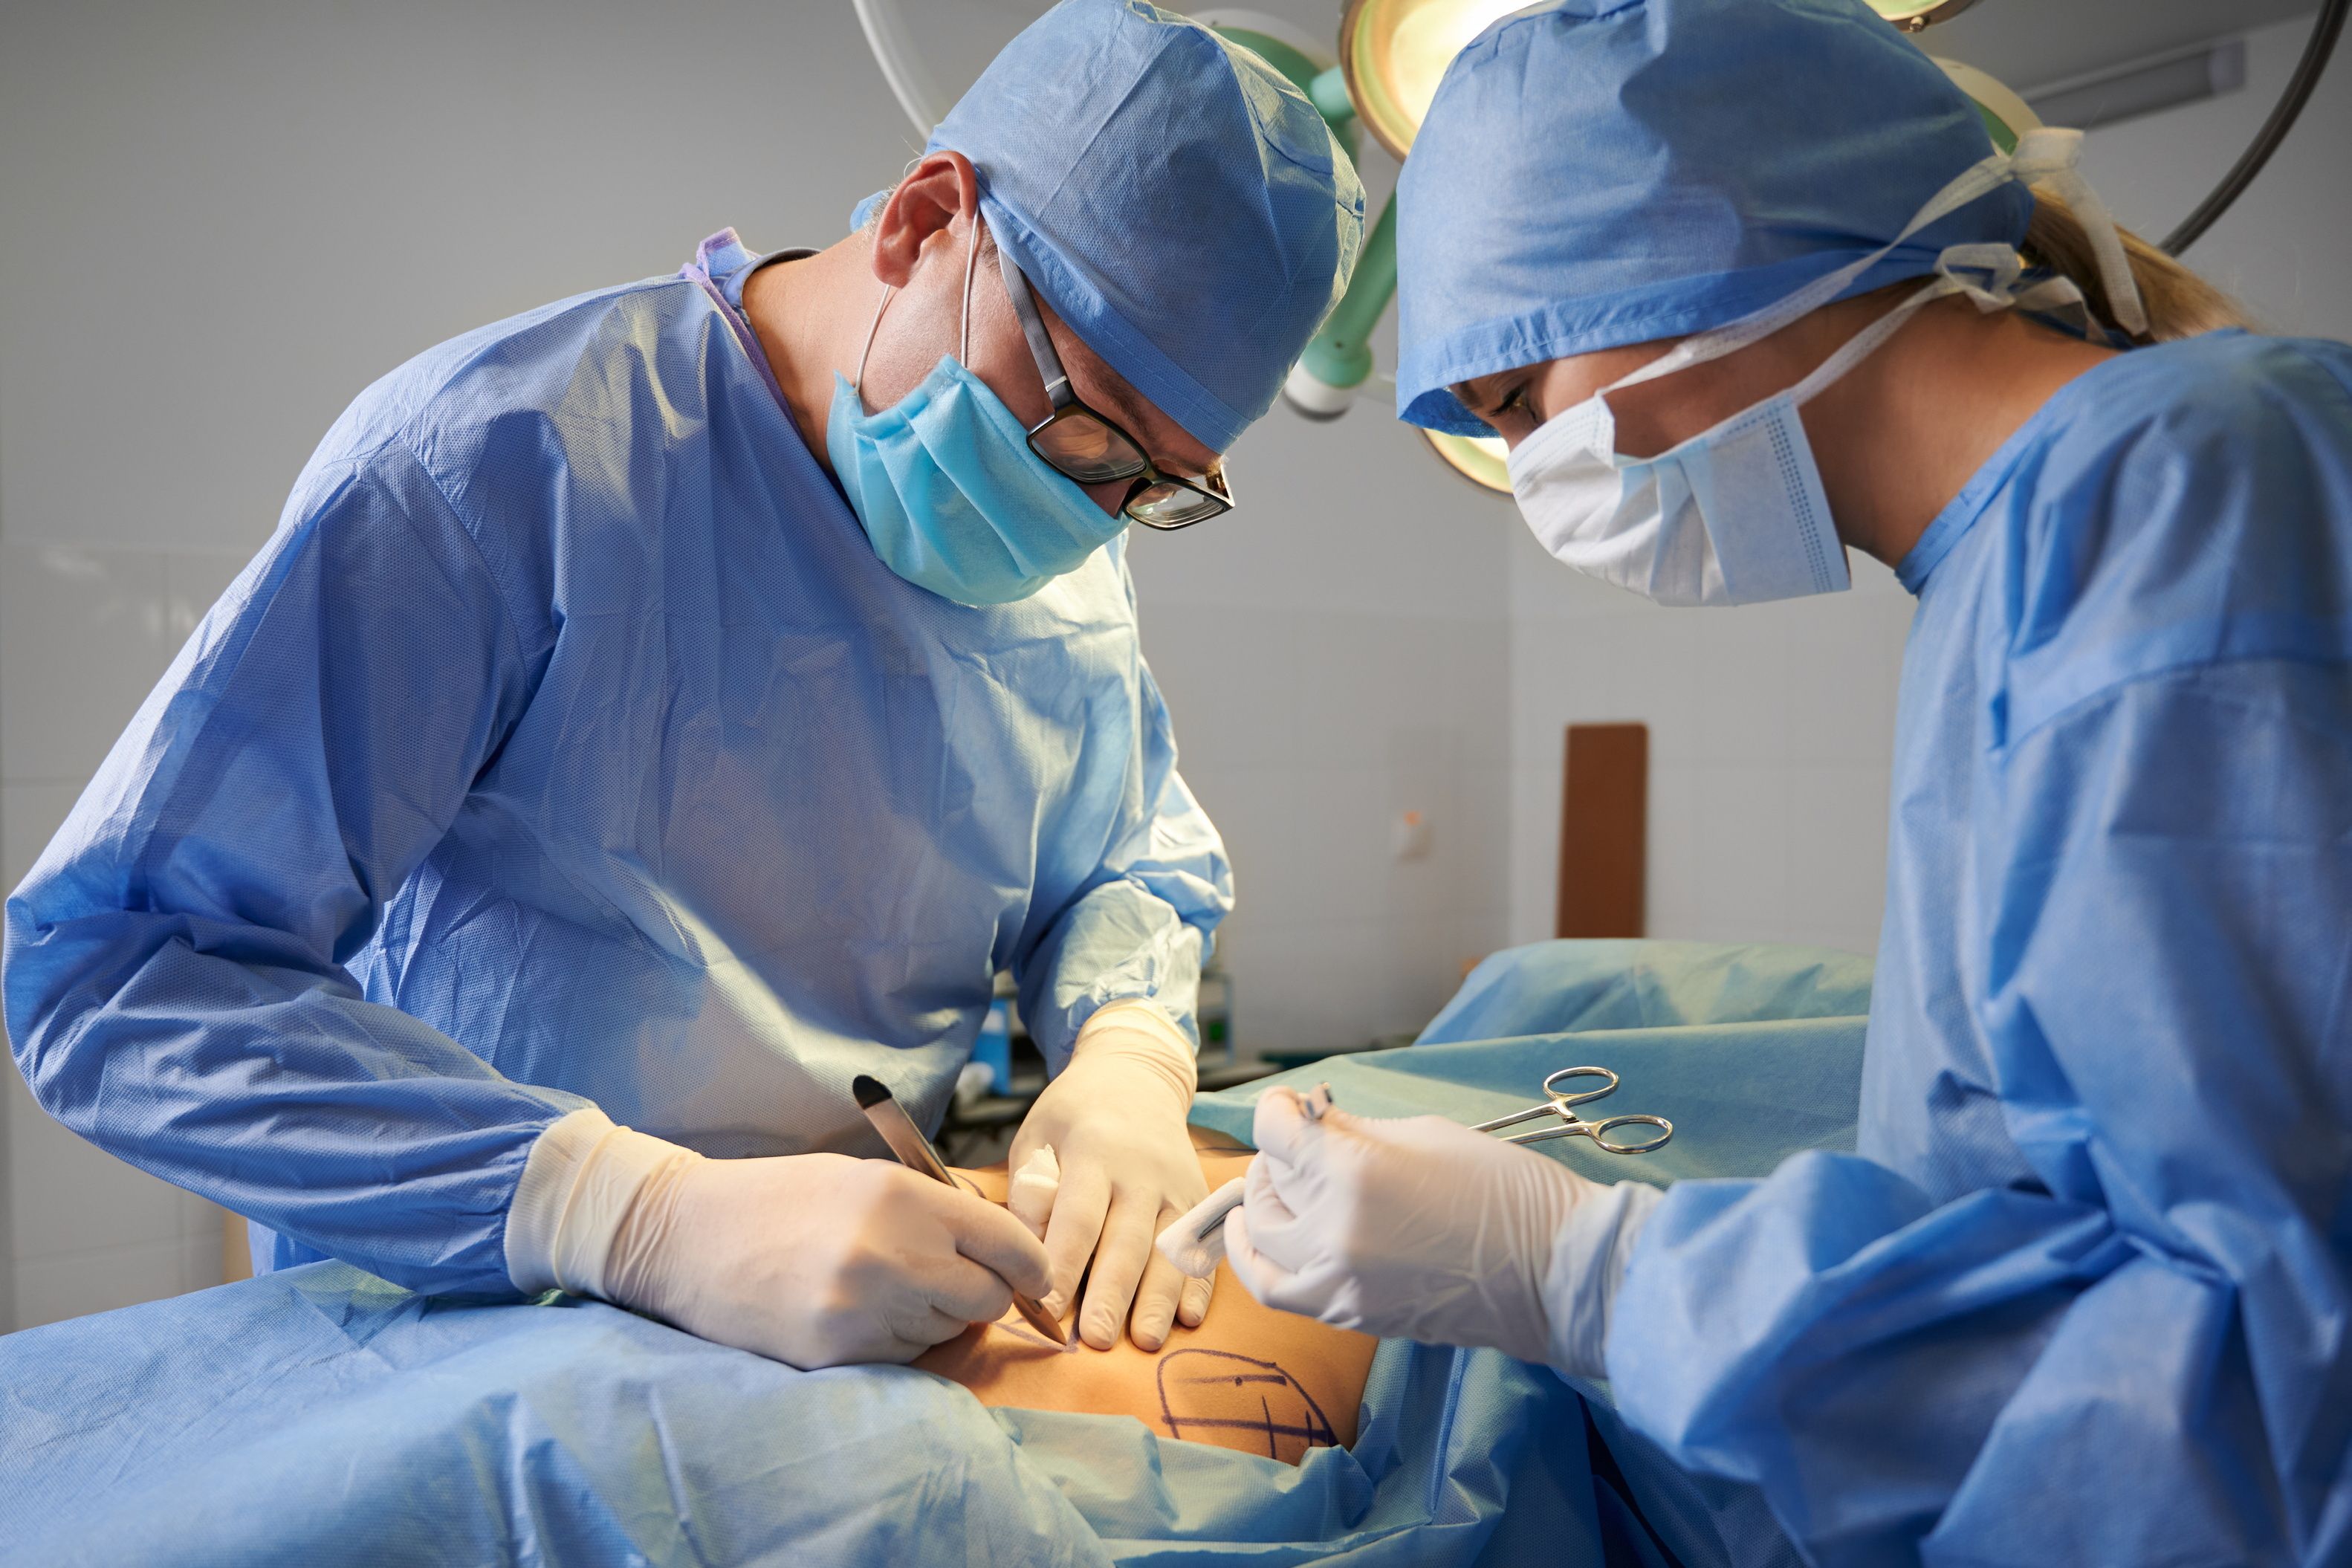 Операций в любое время. Пластическая операция Операционная. Фото пластический хирург в операционной.